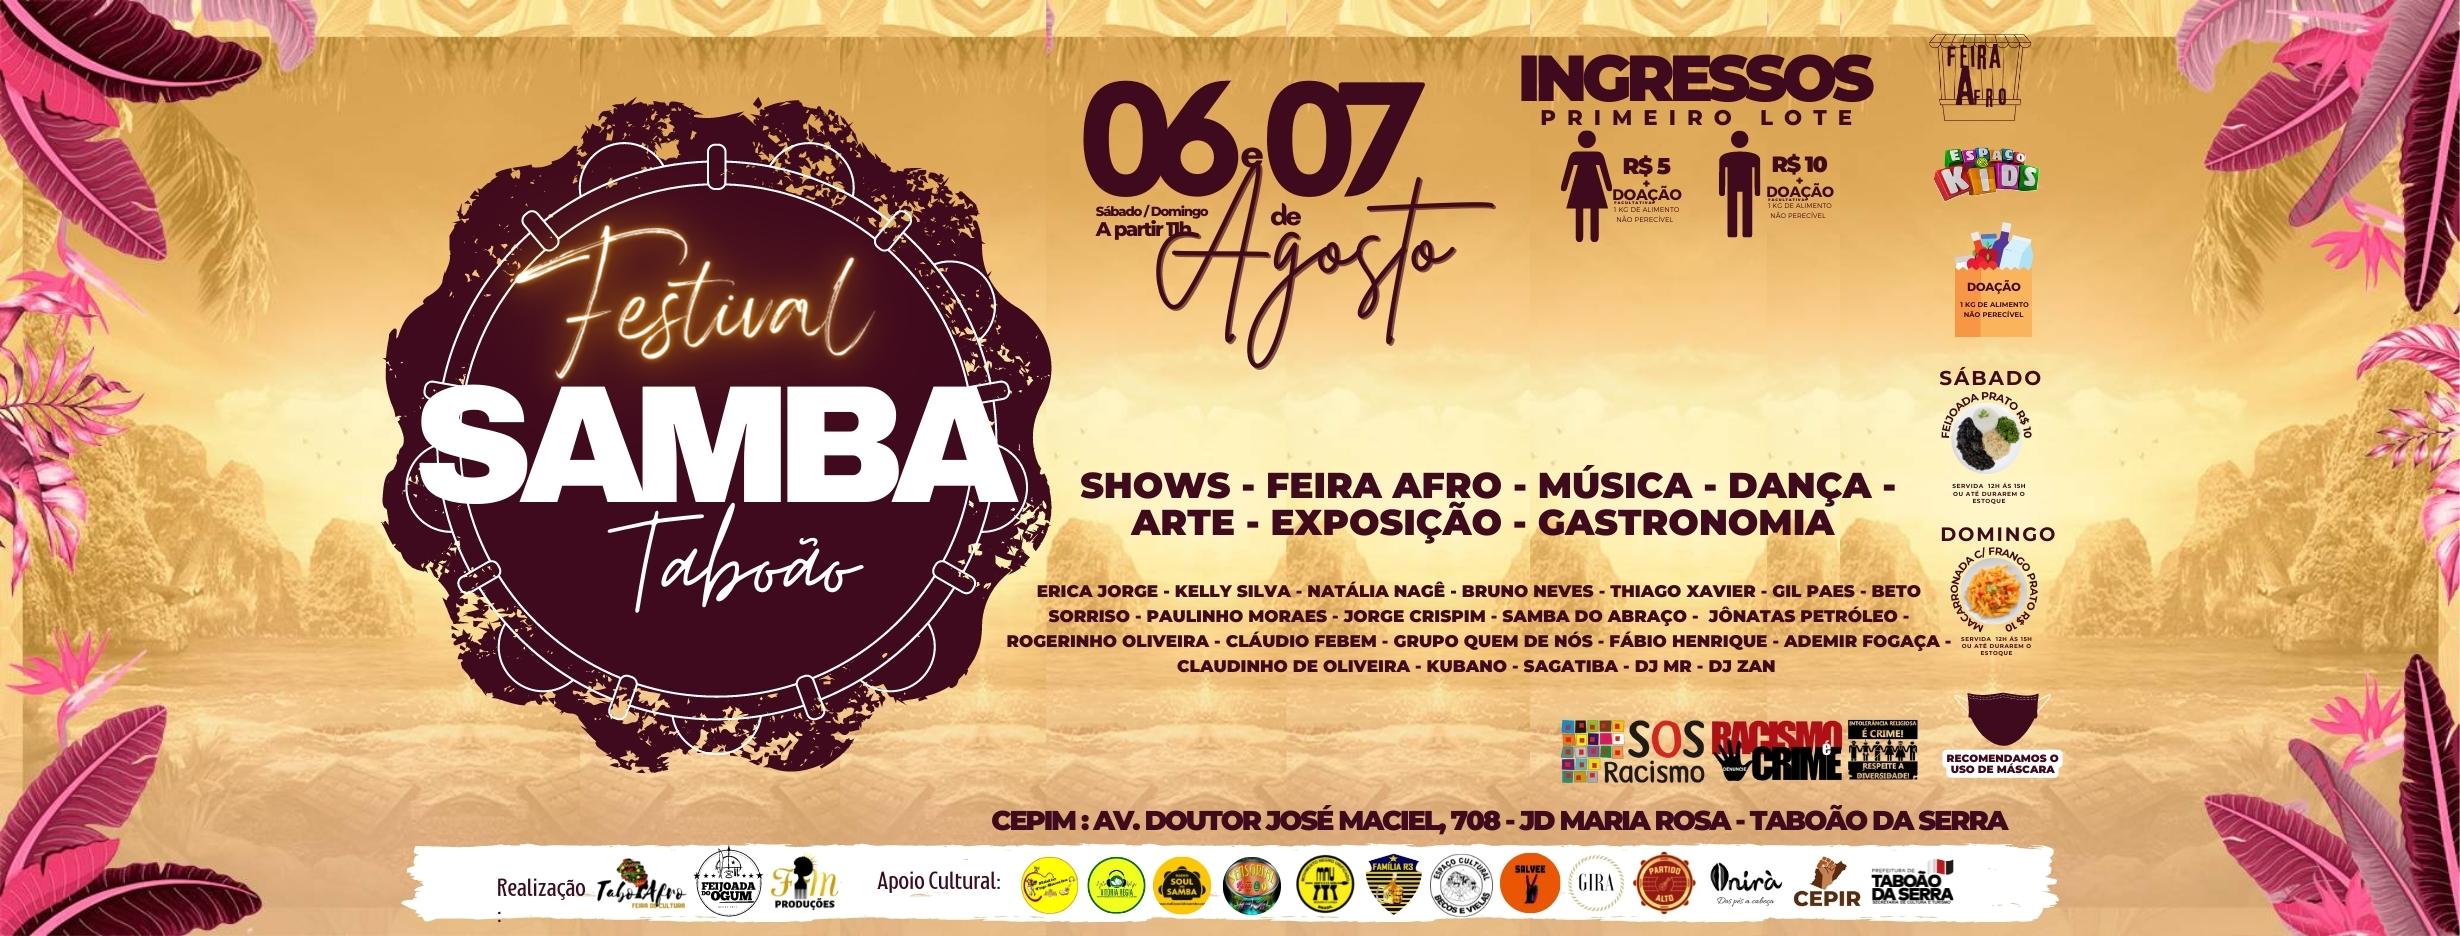 1º Festival Samba Taboão acontecerá em 06 e 07 de agosto